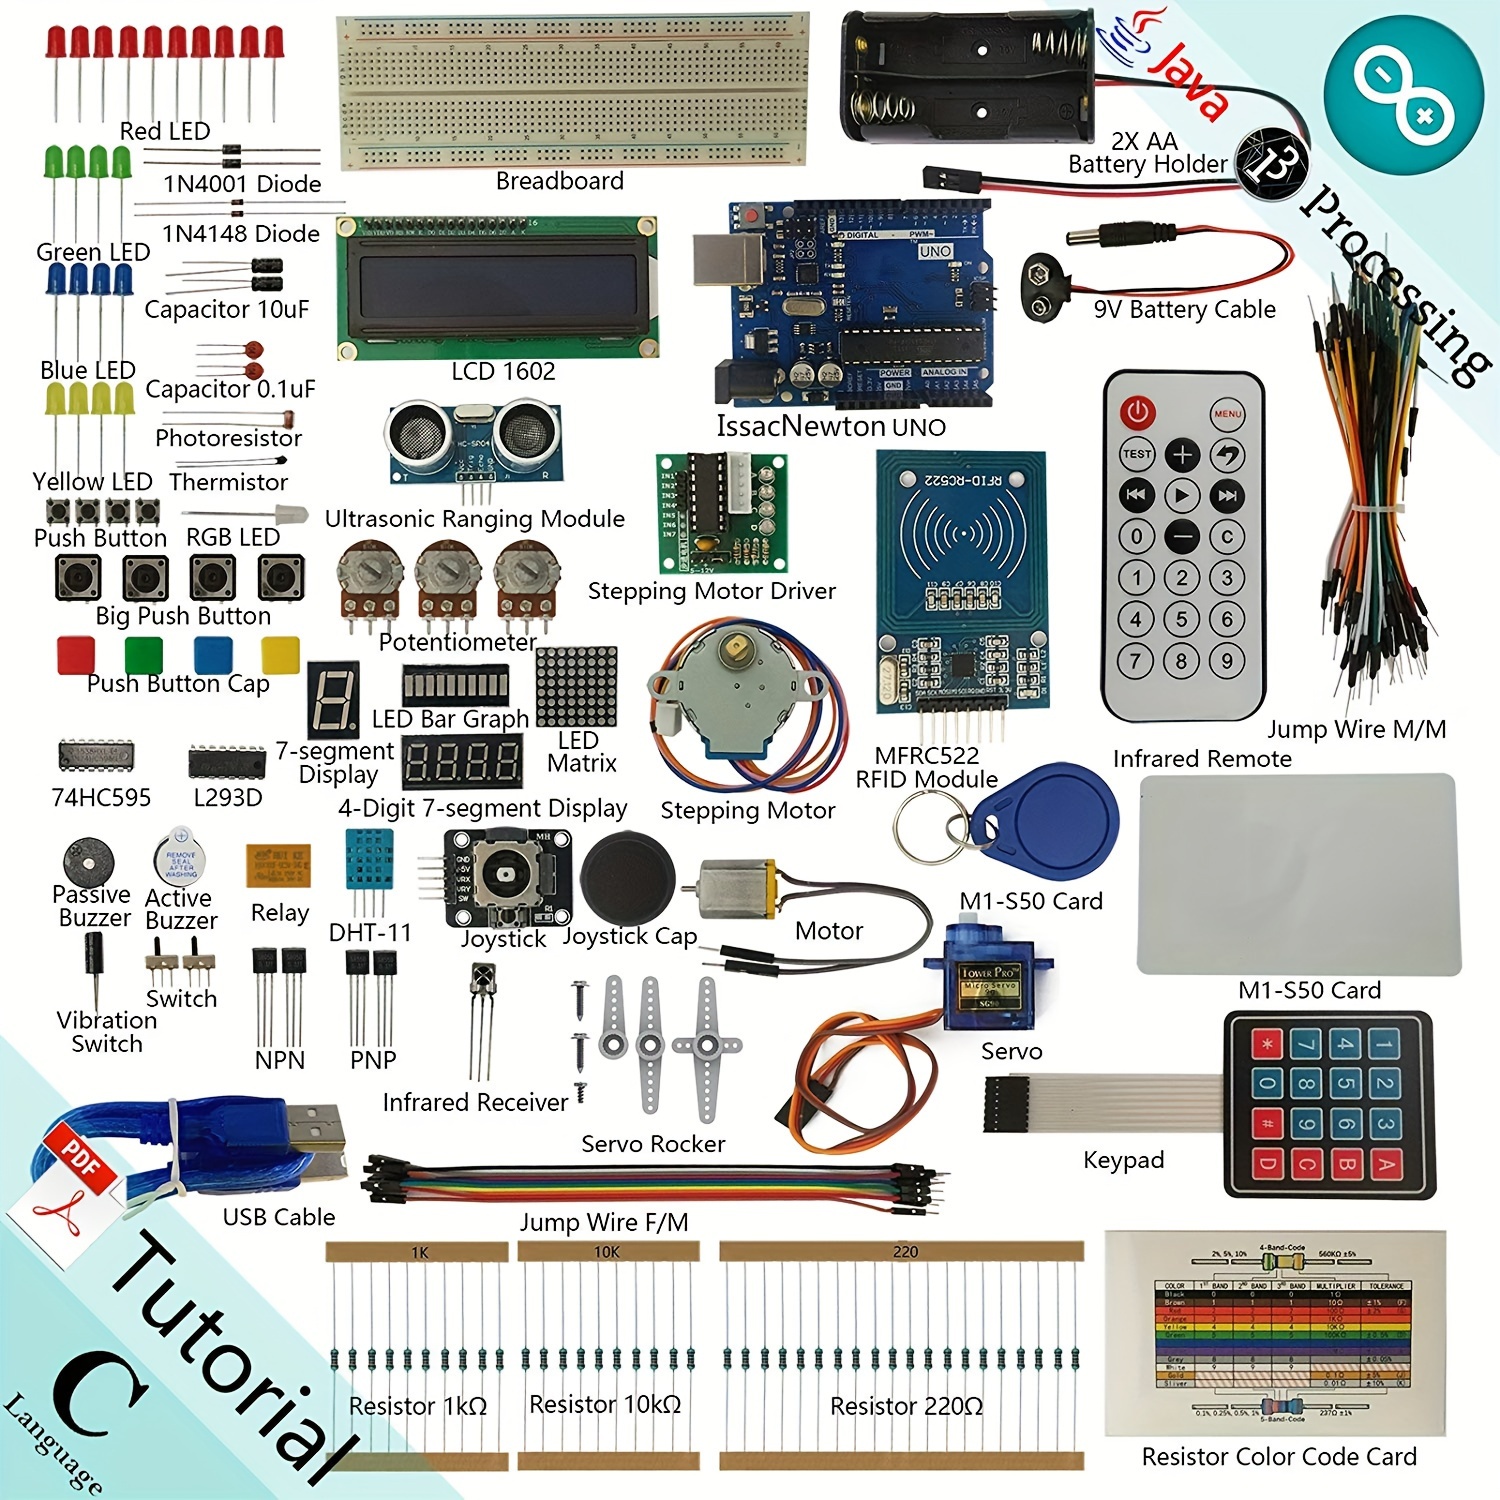  AMONIDA Kit de iniciación de componentes electrónicos, kit  básico de aprendizaje de proyectos, gran cantidad para entusiastas de la  electrónica, aprender componentes electrónicos : Electrónica